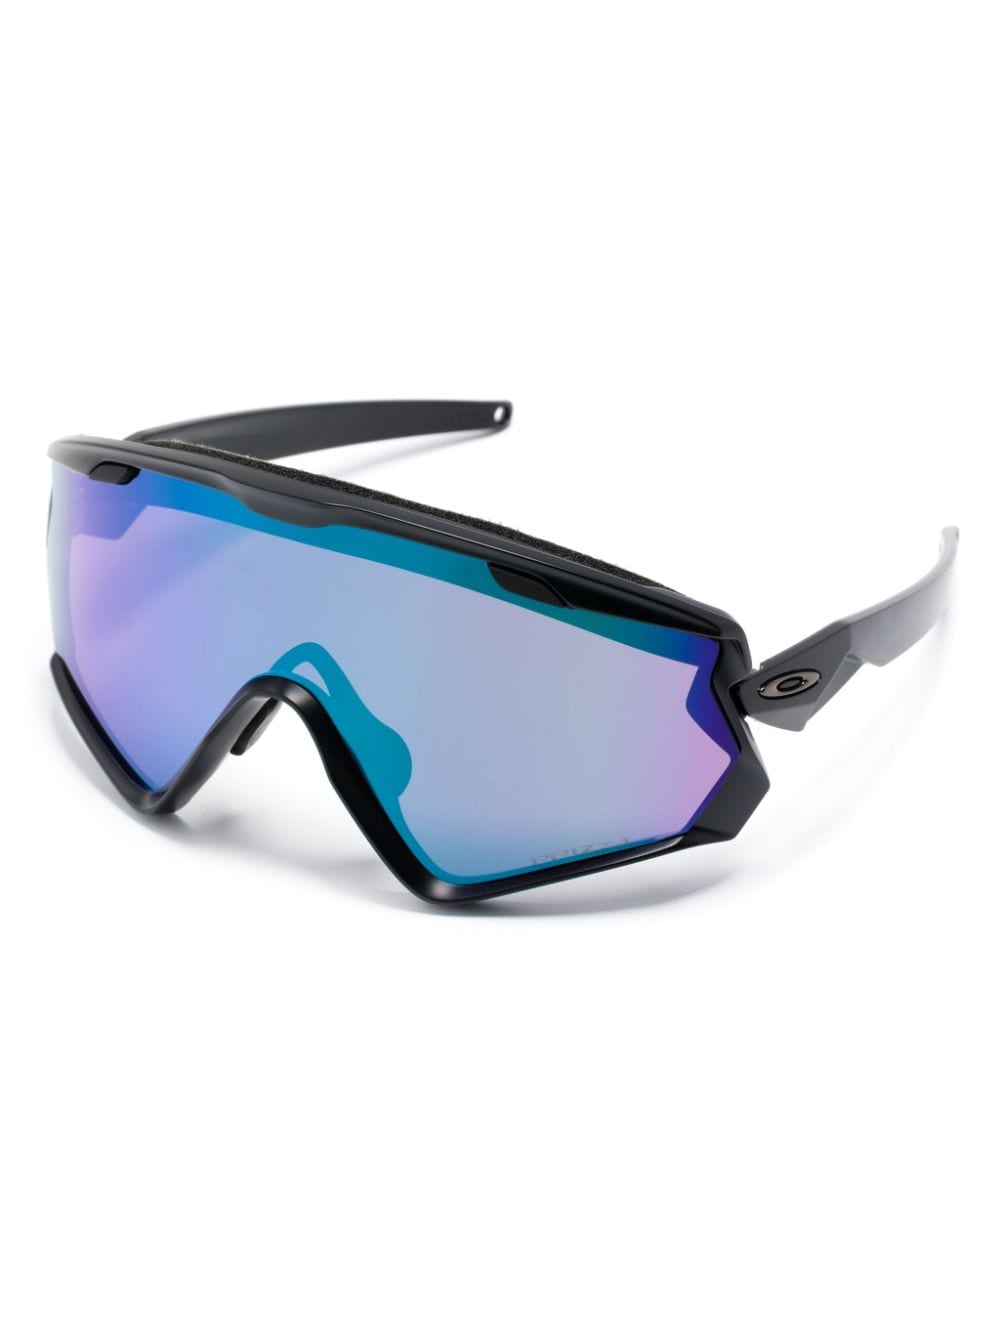 Image 2 of Oakley Wind Jacket 2.0 shield sunglasses